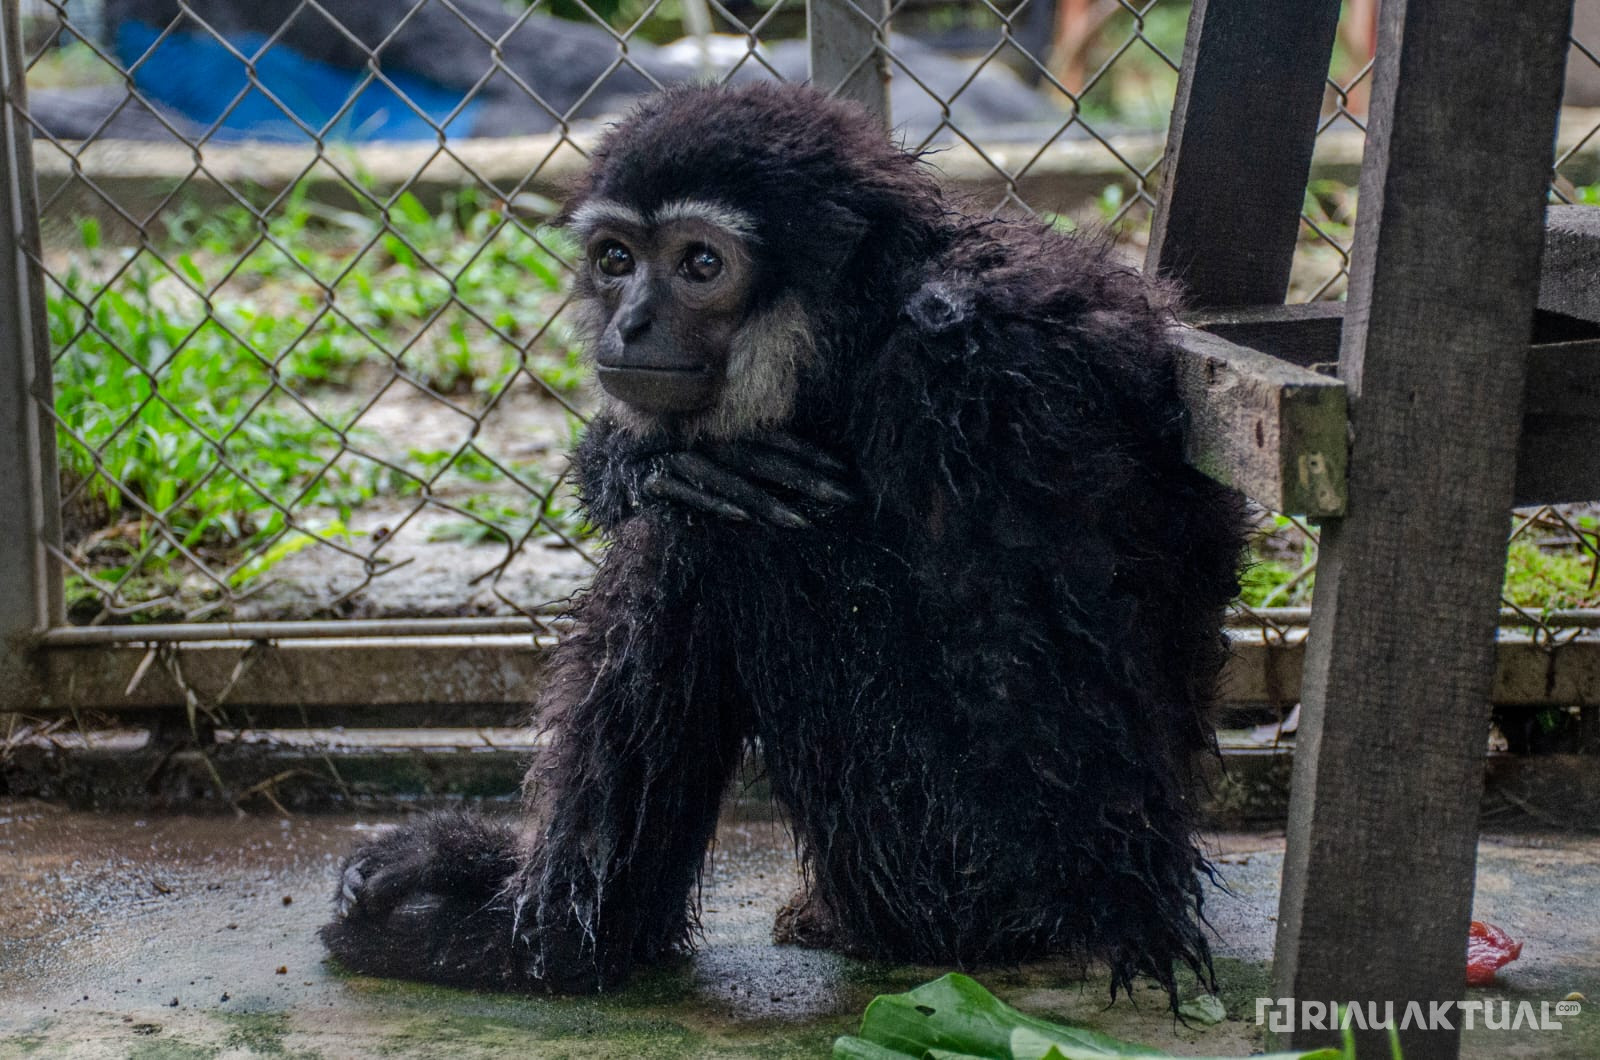 Terancam Punah, Warga Pelalawan Serahkan Primata Indonesia ke Balai BKSDA Riau